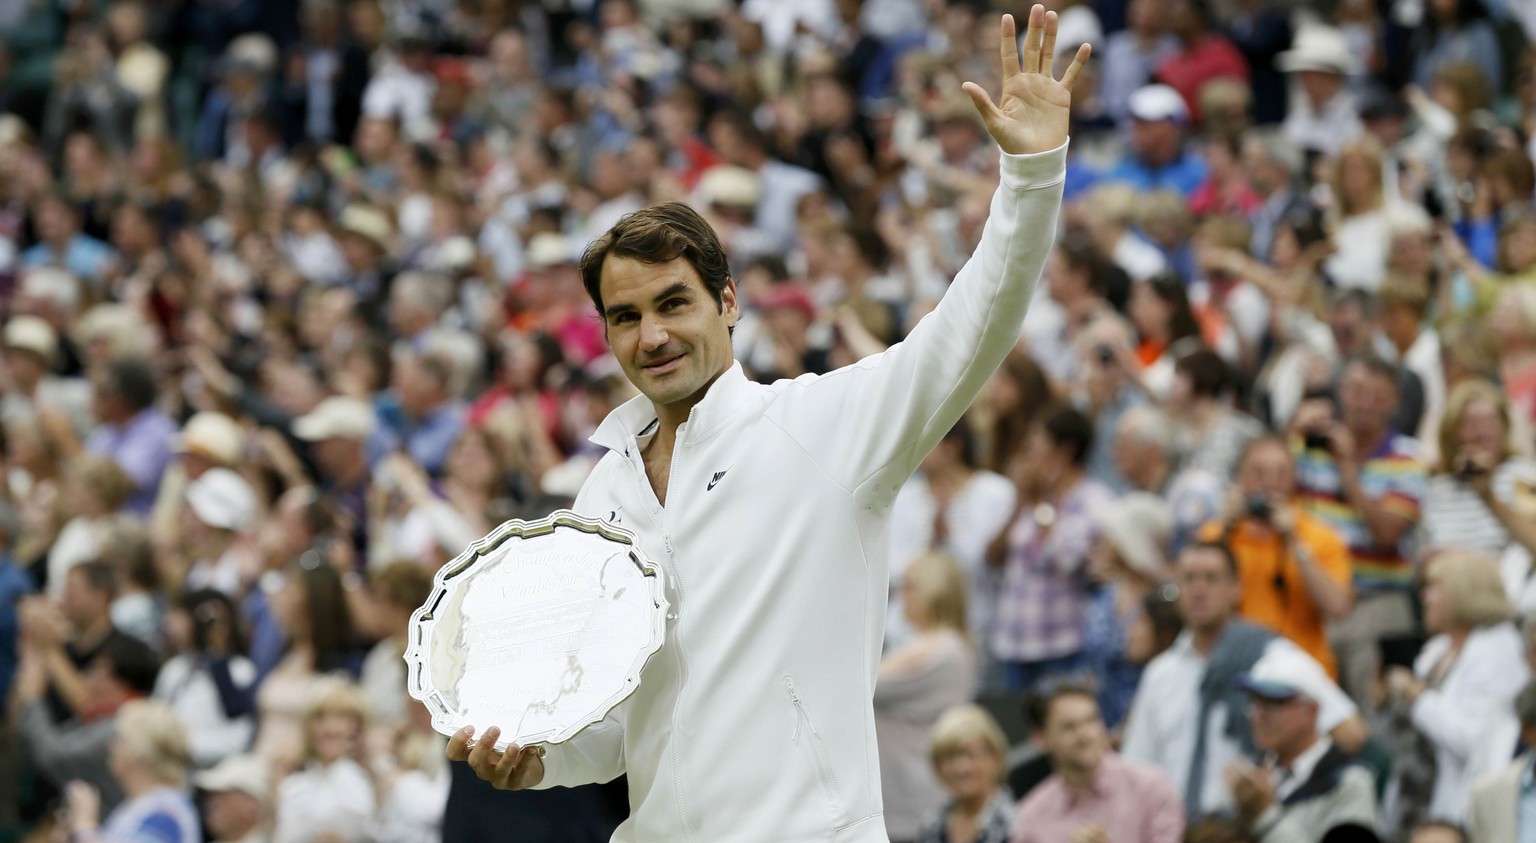 Nicht zufrieden mit dem Silberteller: Aber wird Roger Federer je wieder eine Grand-Slam-Trophäe hochstemmen?